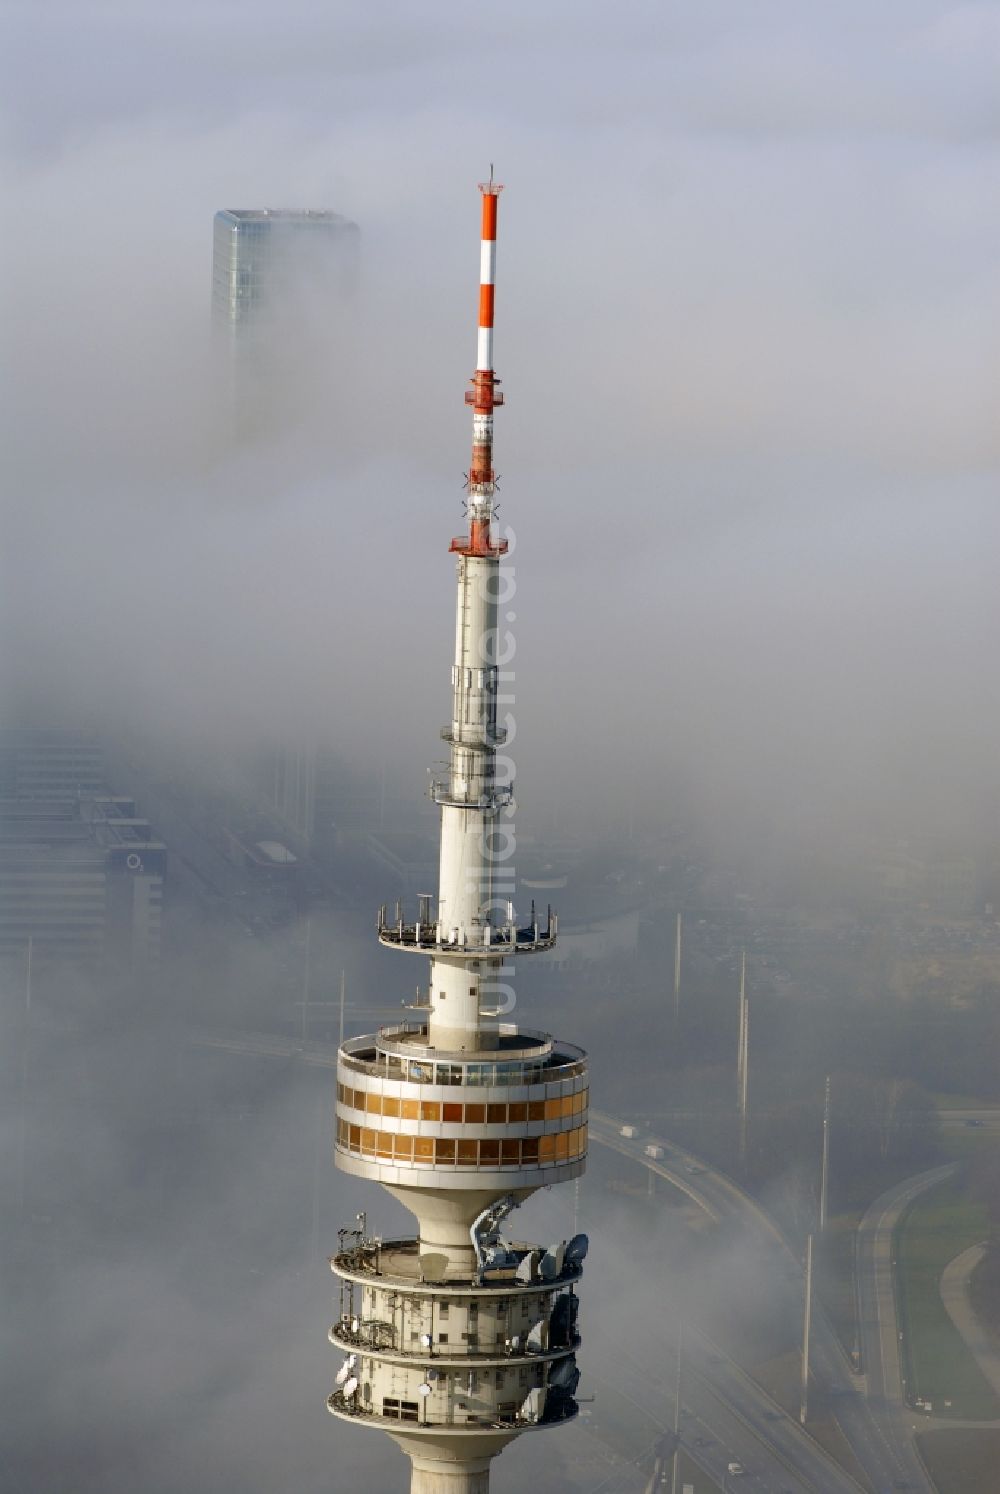 München von oben - Fernmeldeturm und Fernsehturm in München im Bundesland Bayern, Deutschland